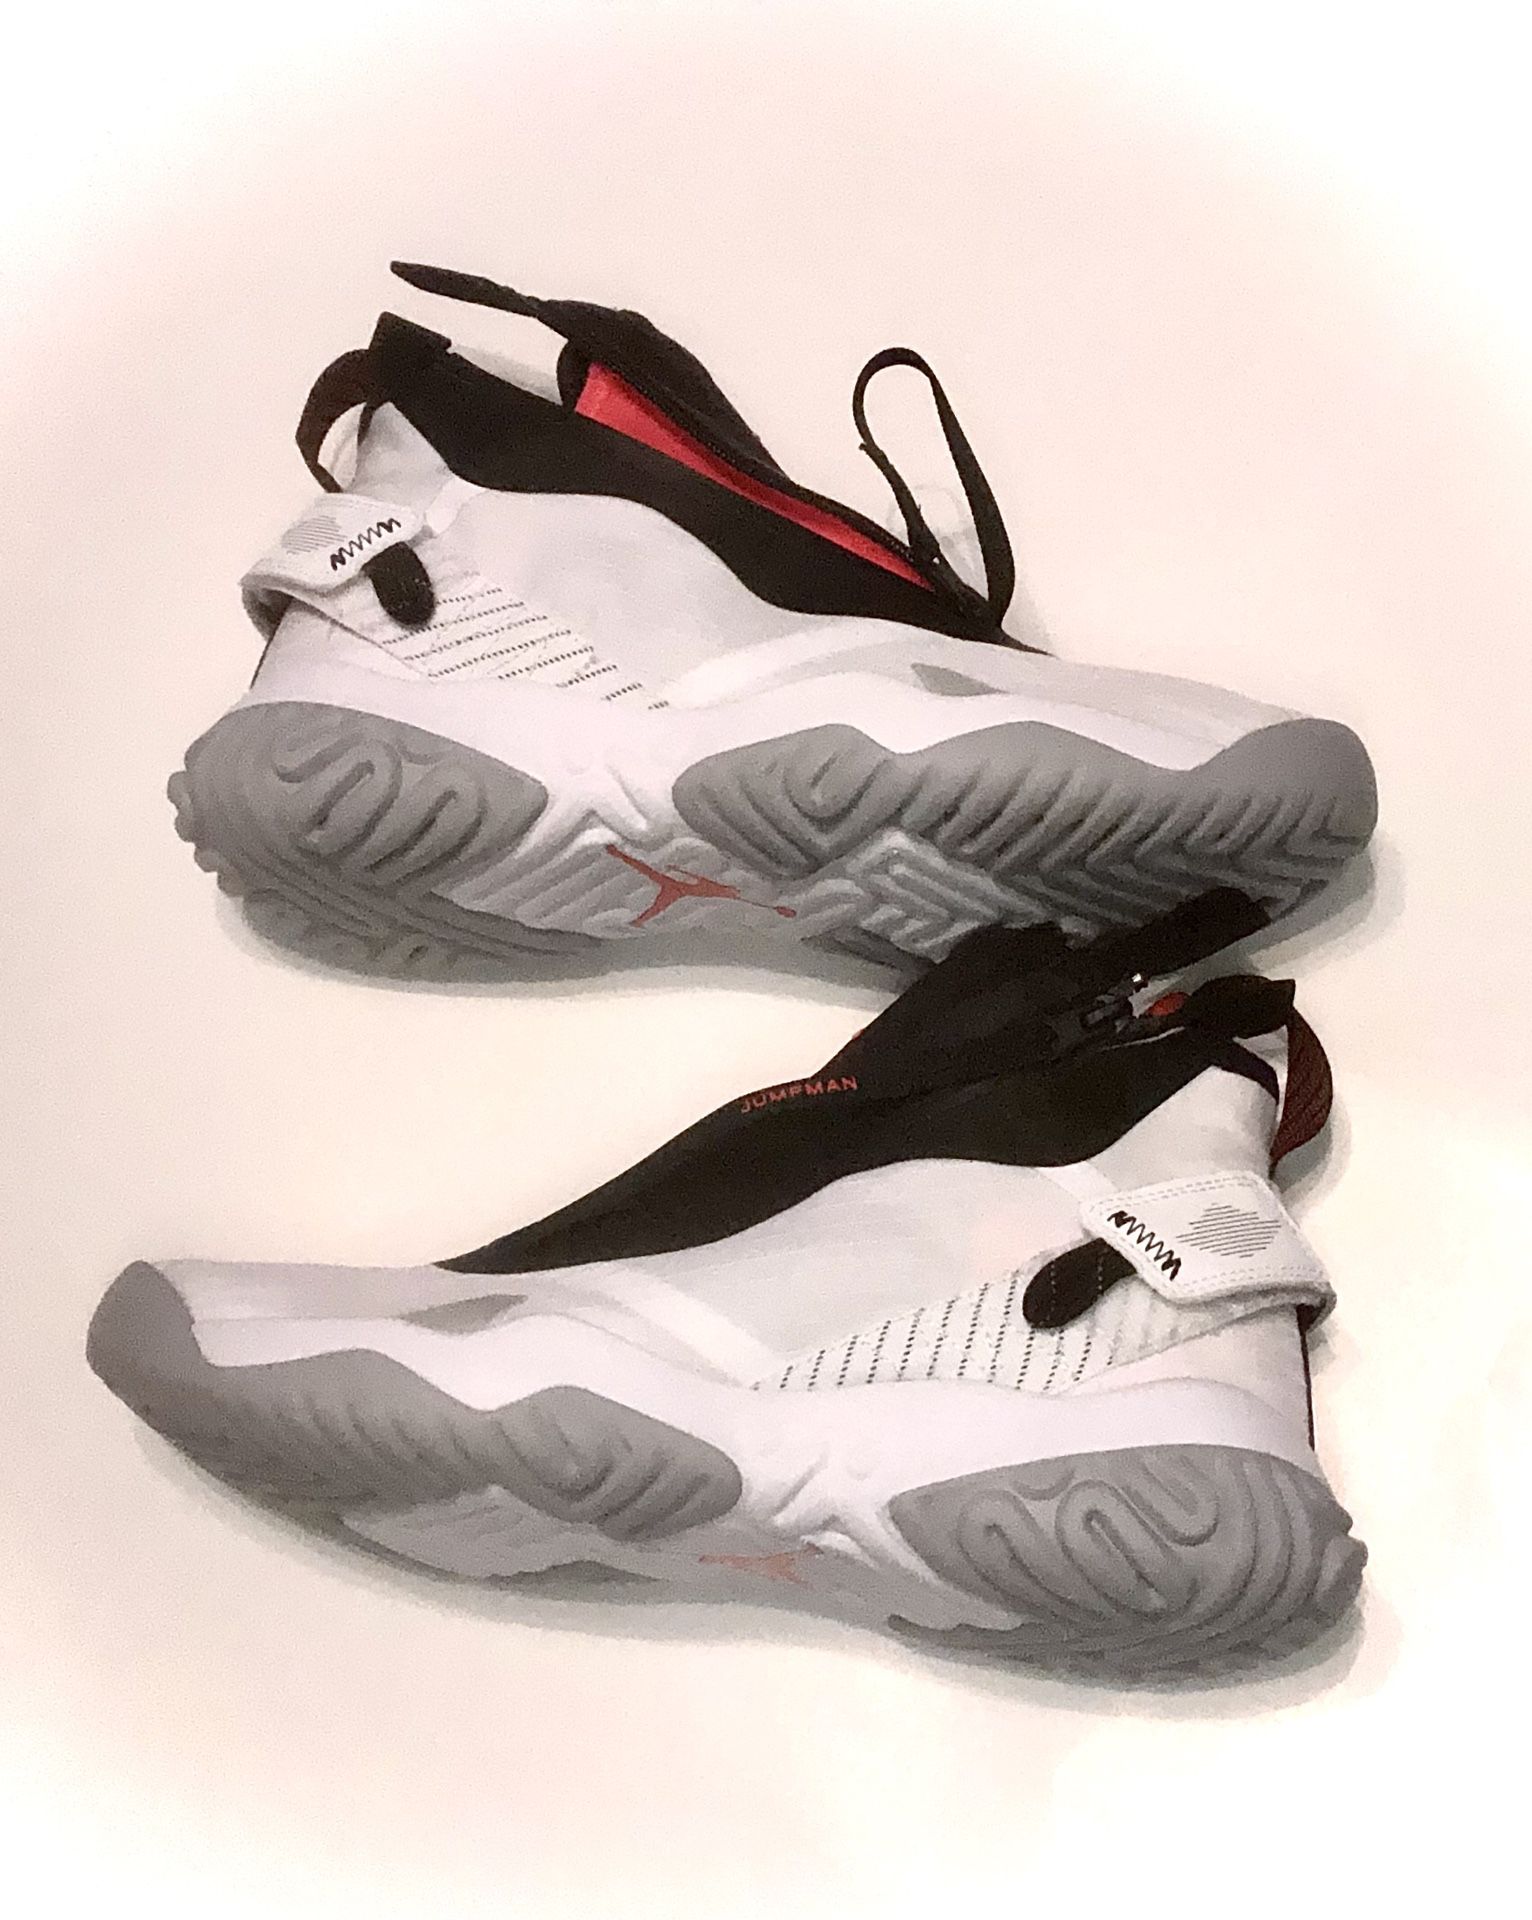 NEW Nike CI3794-100 Jordan Proto React Z Men's Basketball Shoes/Sneakers Size 9